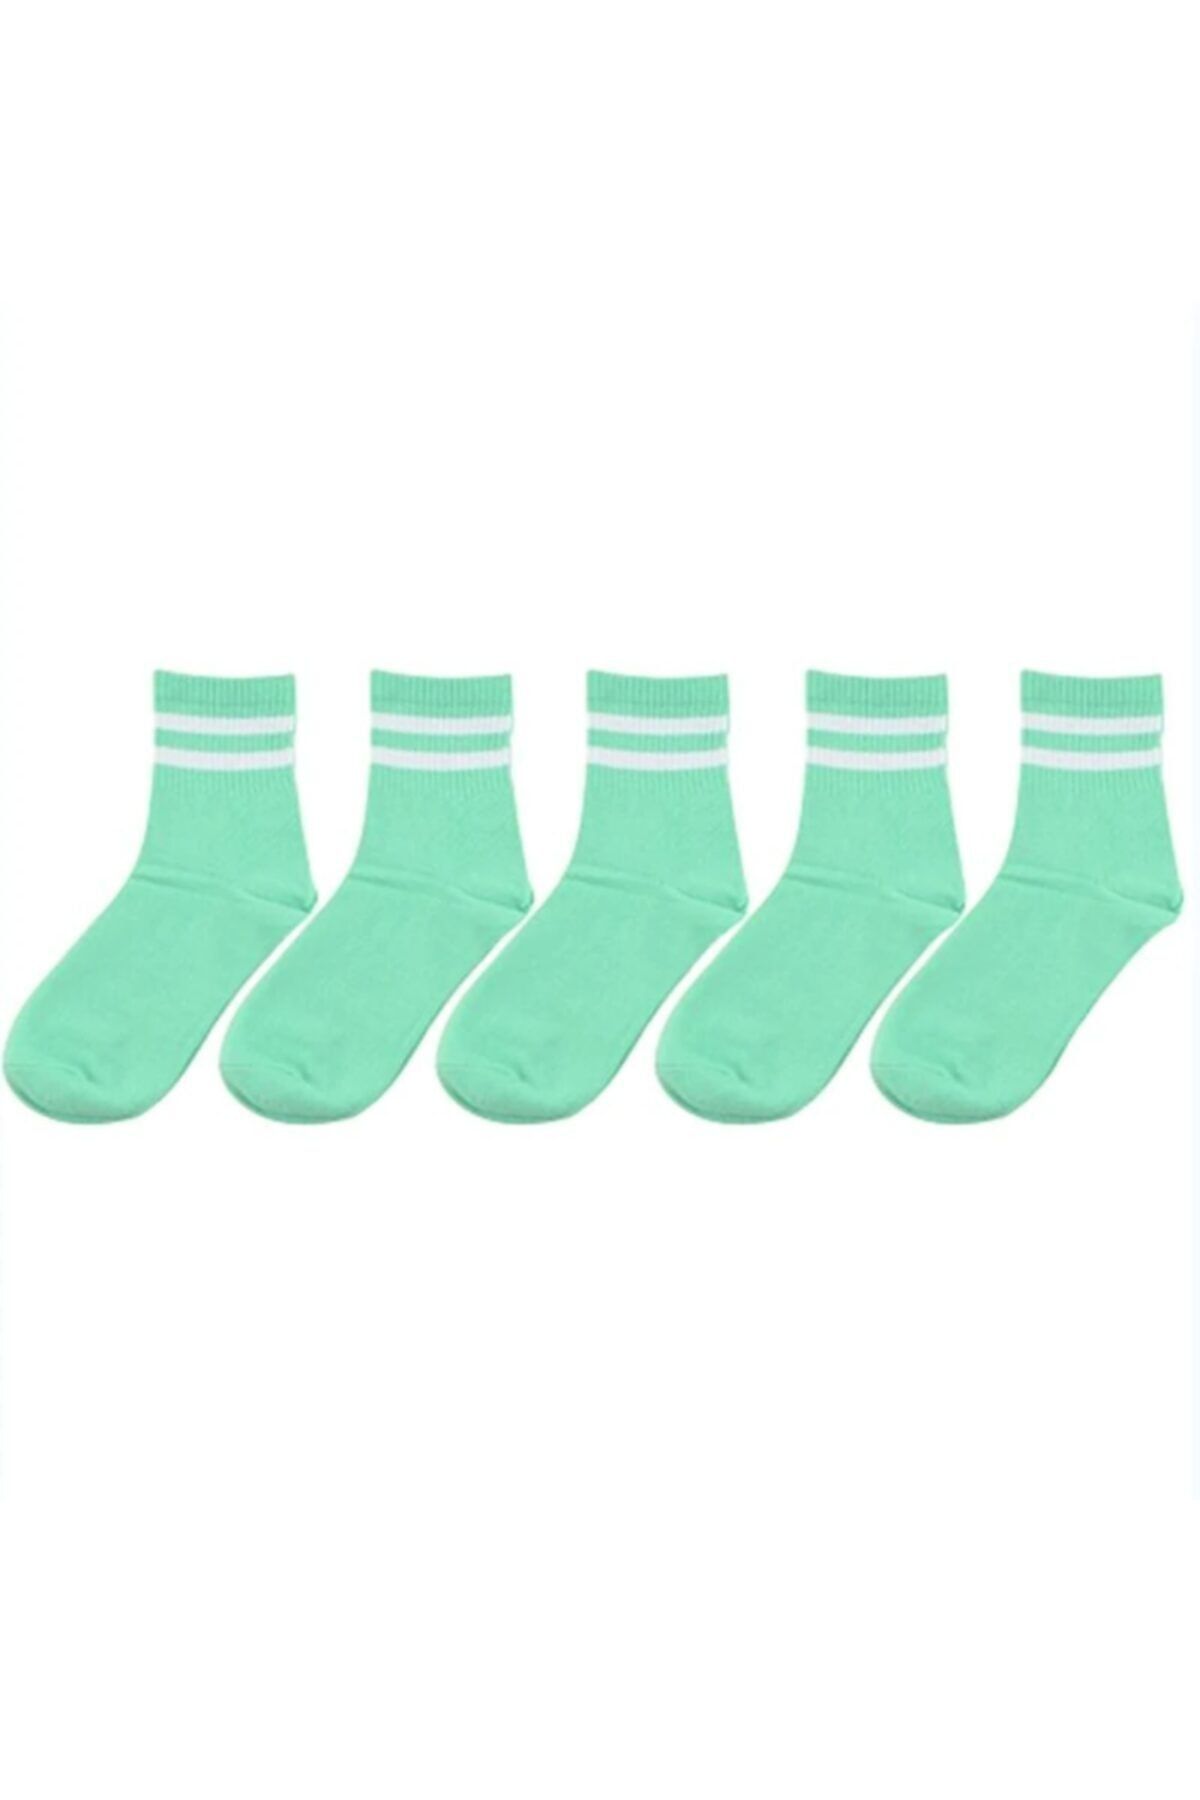 çorapmanya Kadın 5 Çift Karışık Renkli Çizgili Kolej Tenis Çorabı-12